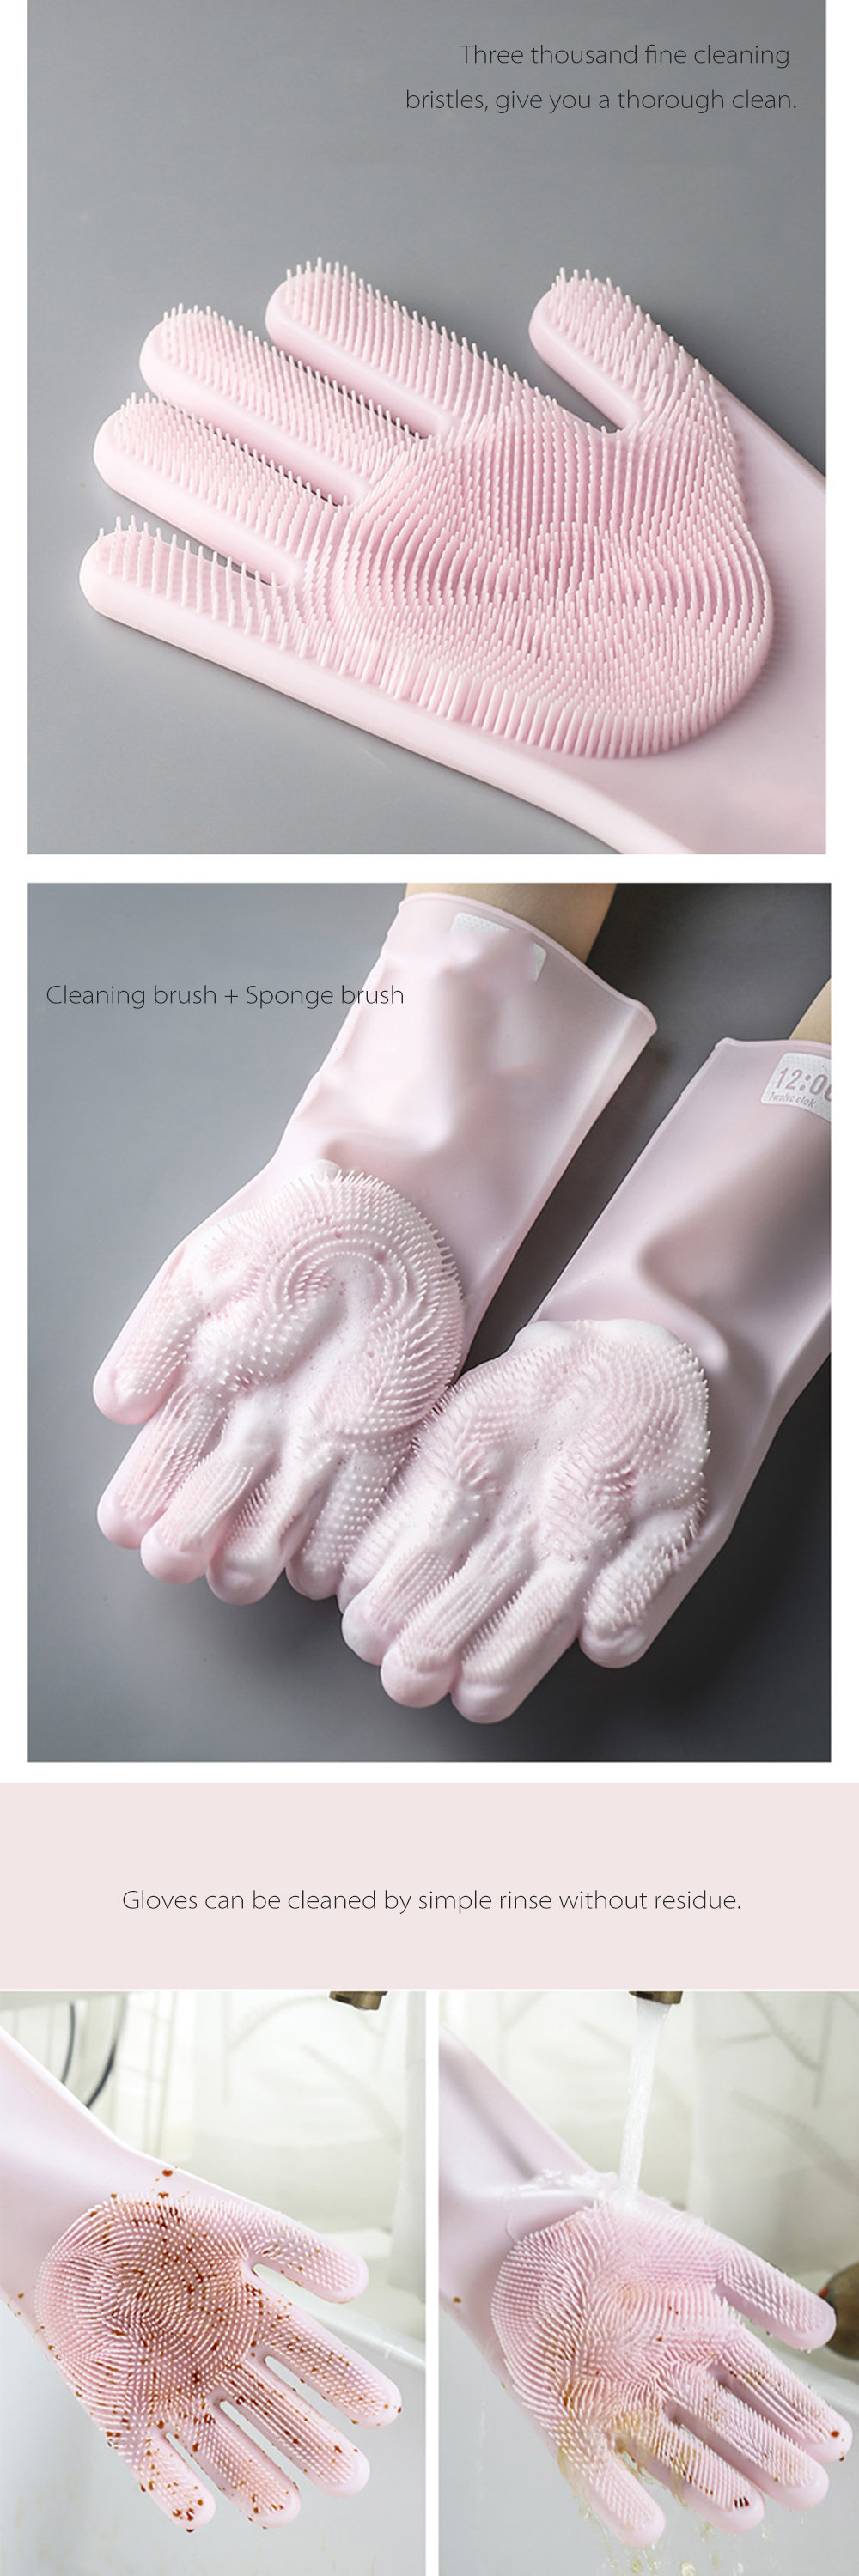 Silicone Dishwashing Gloves Cute Style